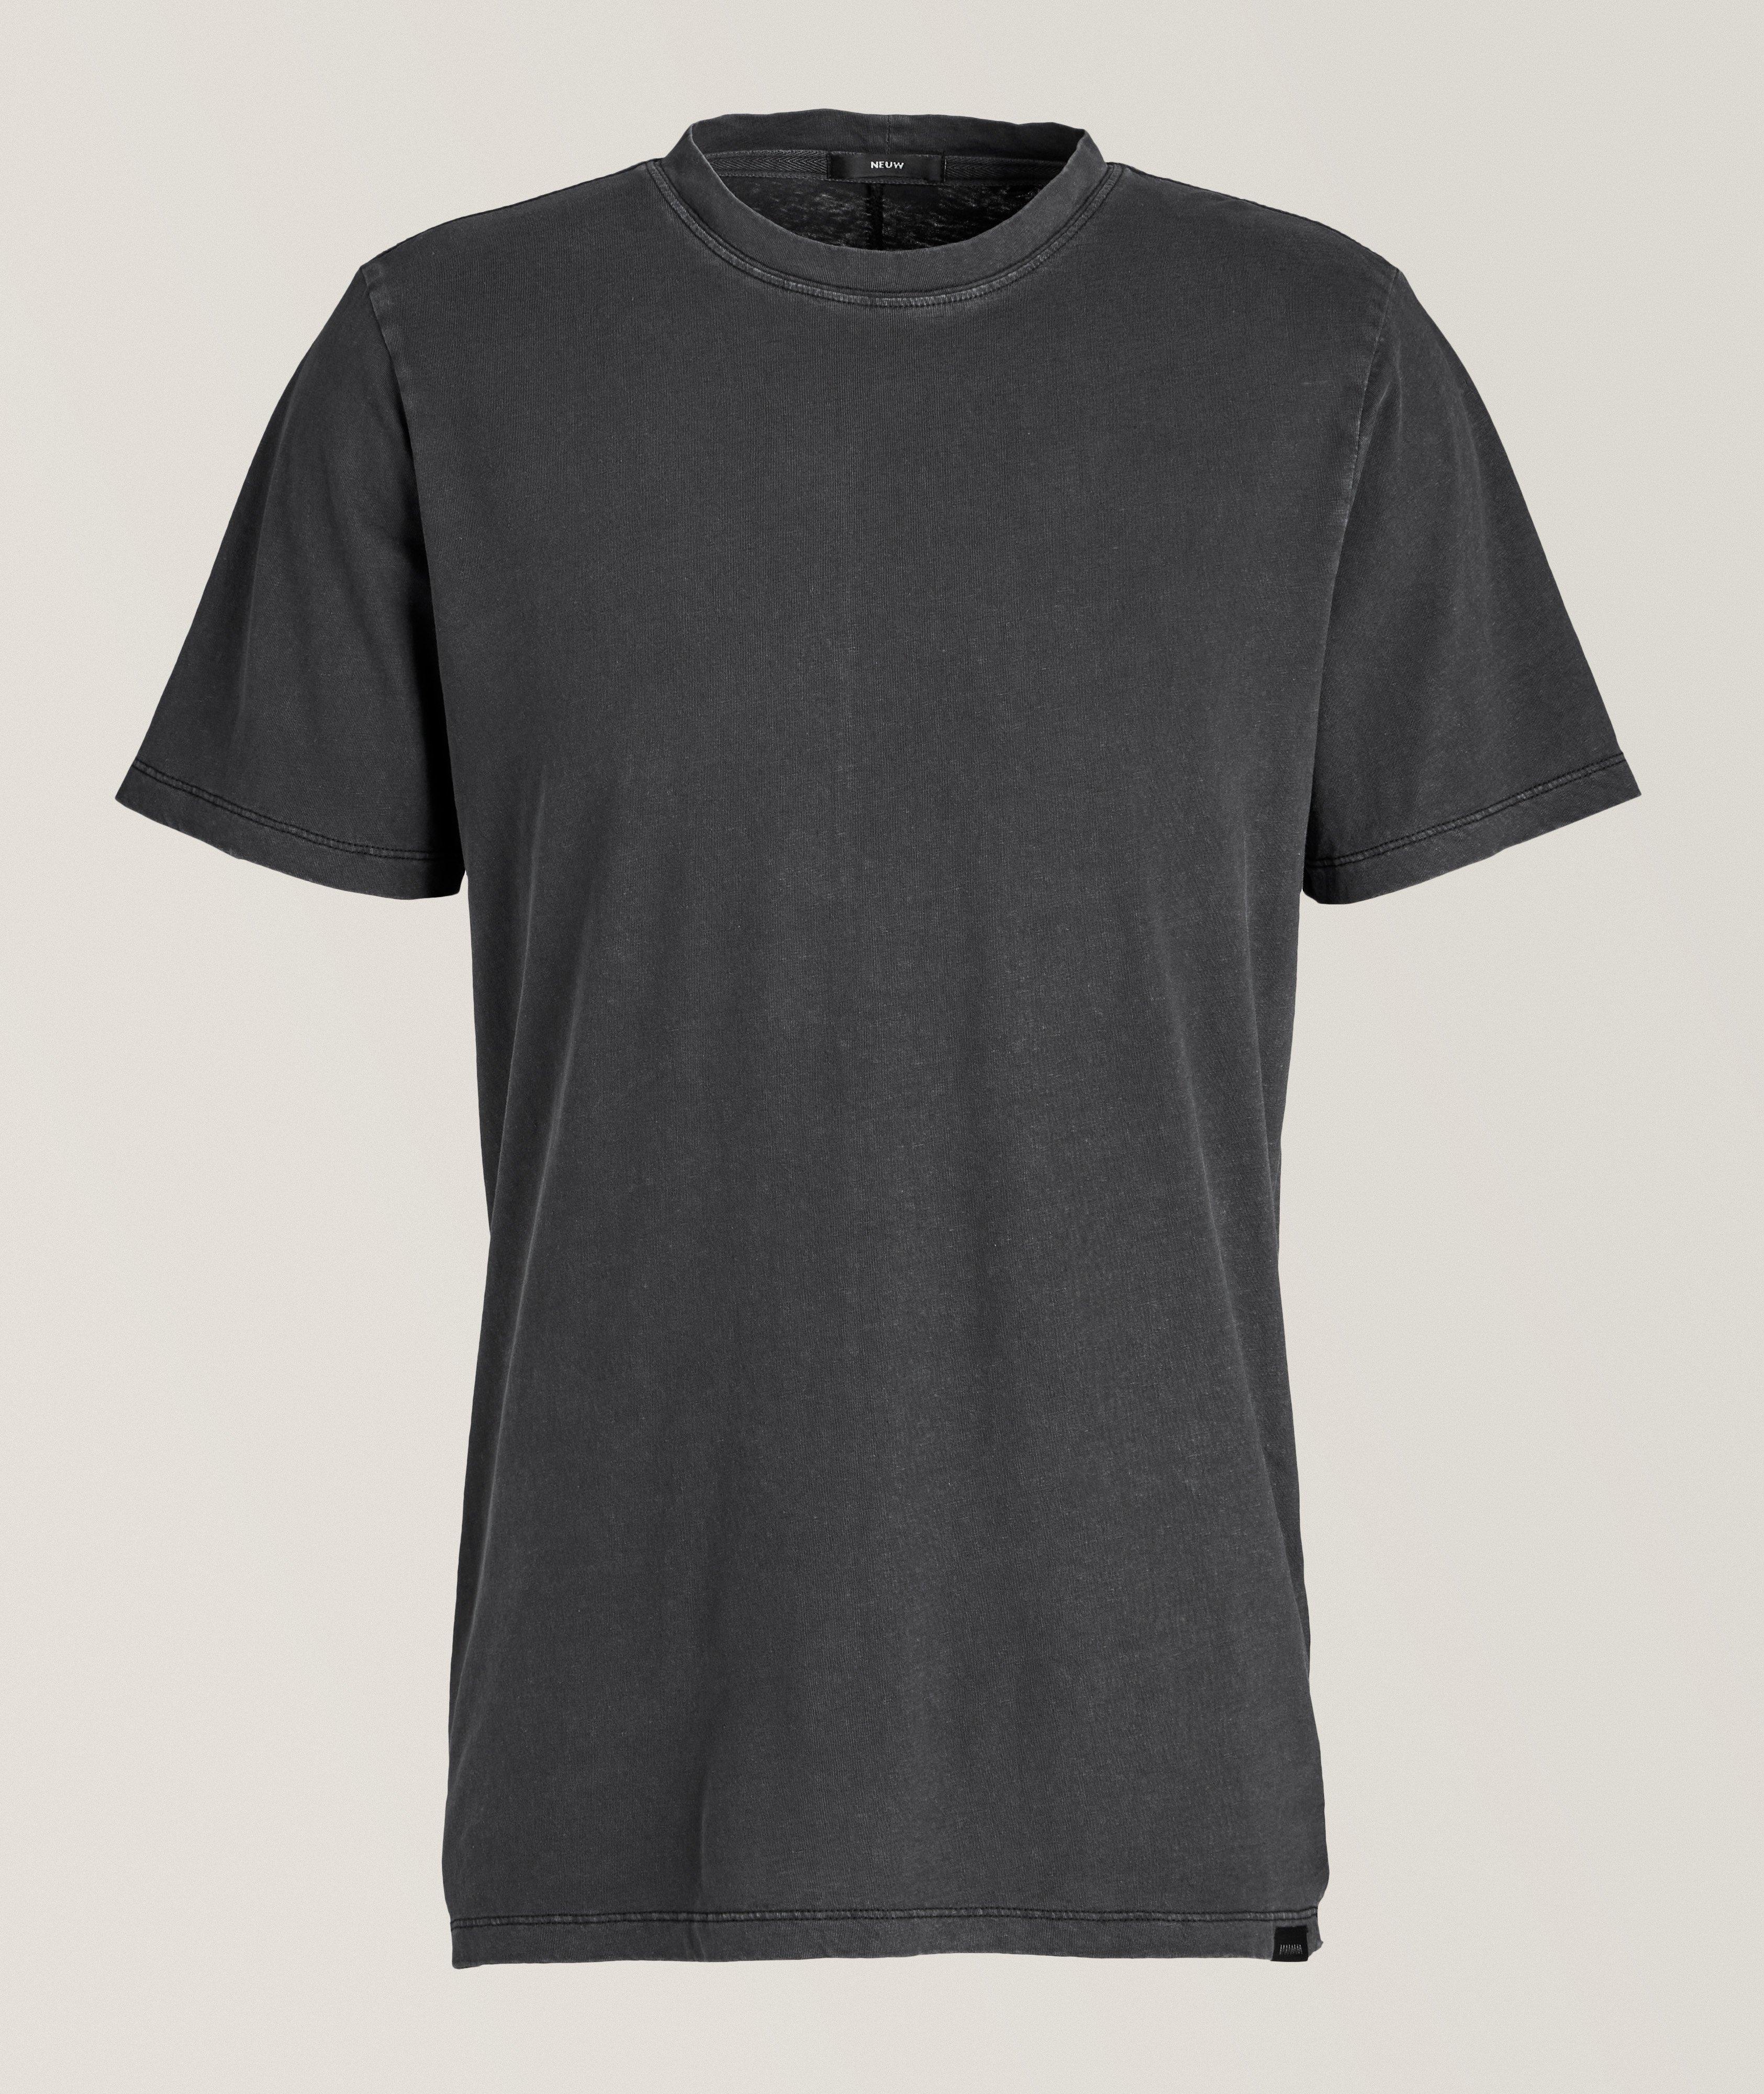  Cotton-Linen Layer T-Shirt  image 0